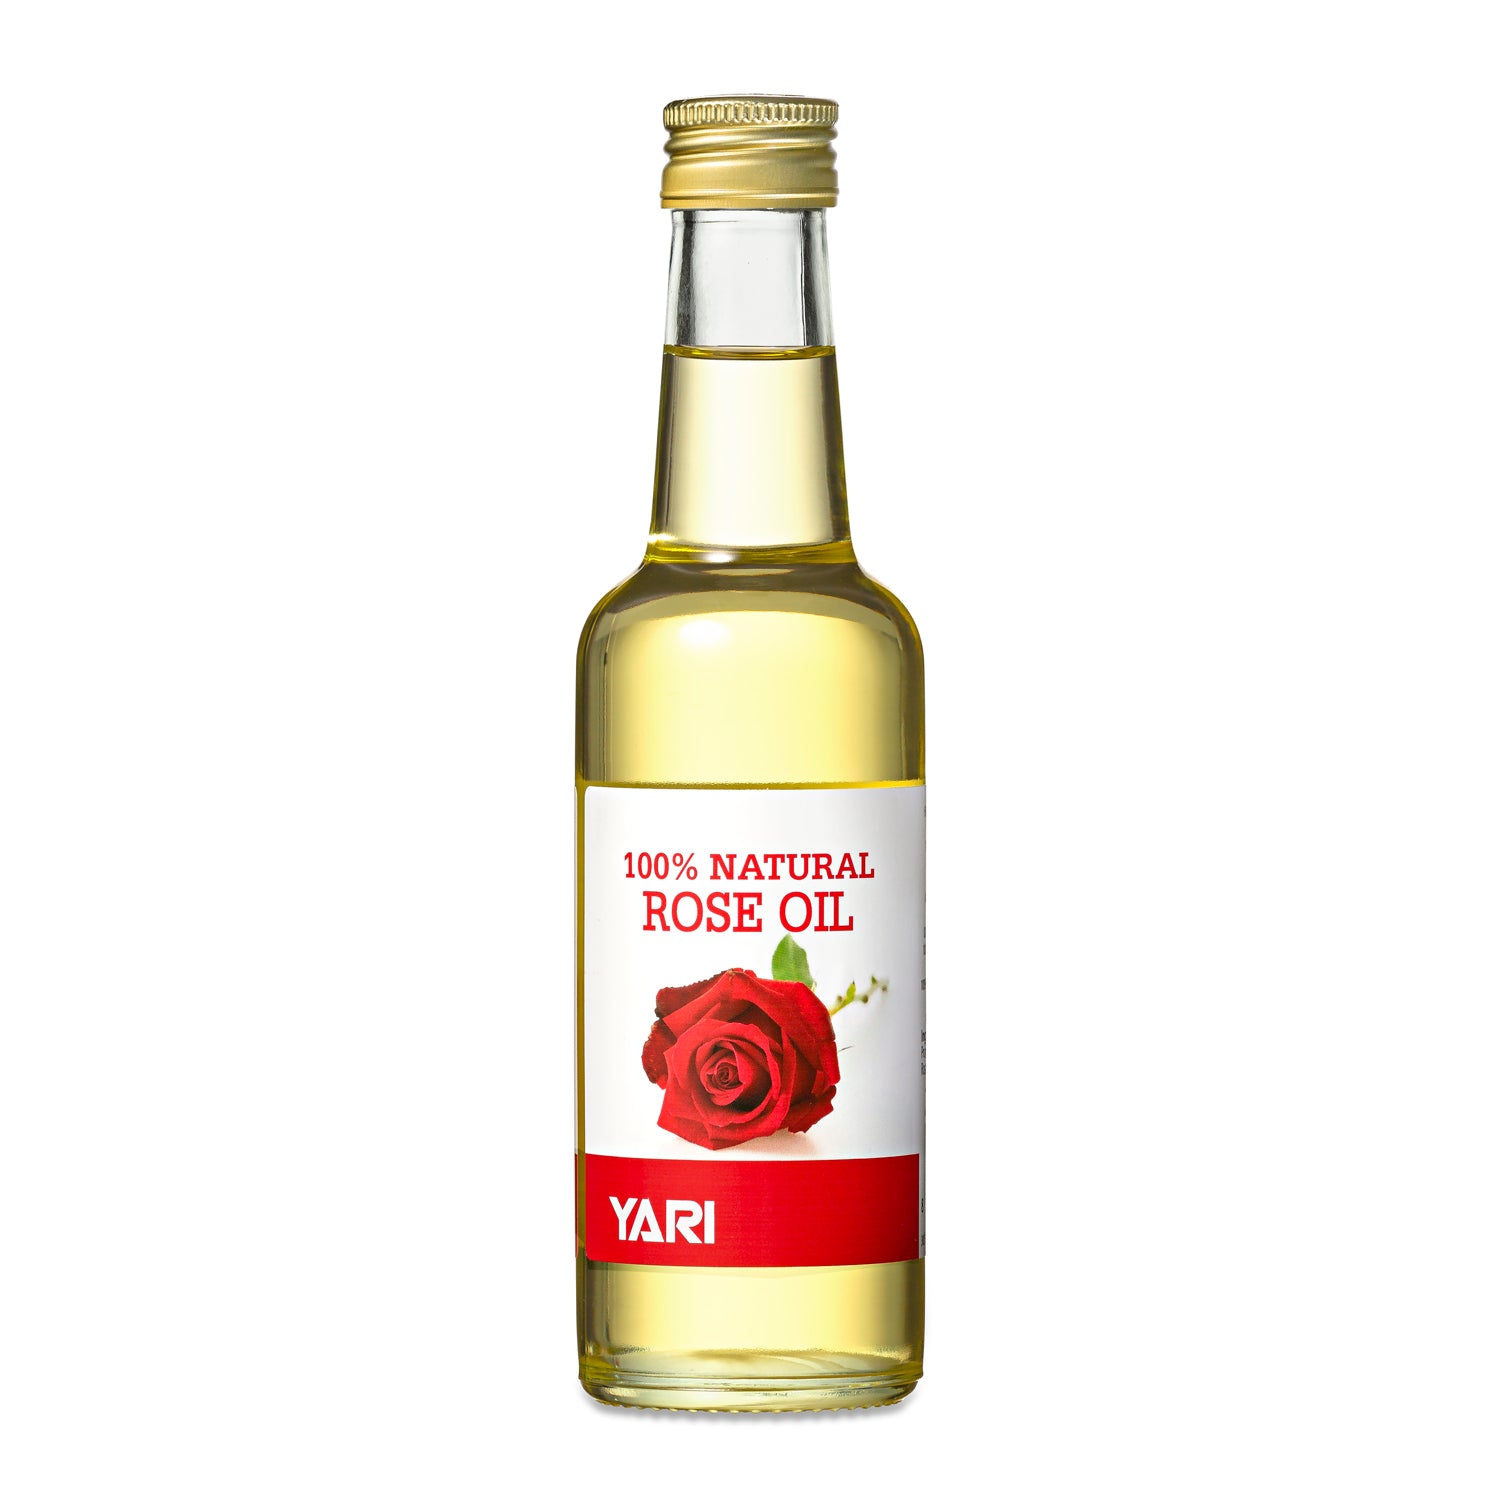 Yari - 100% Natural Rose Oil 250ml